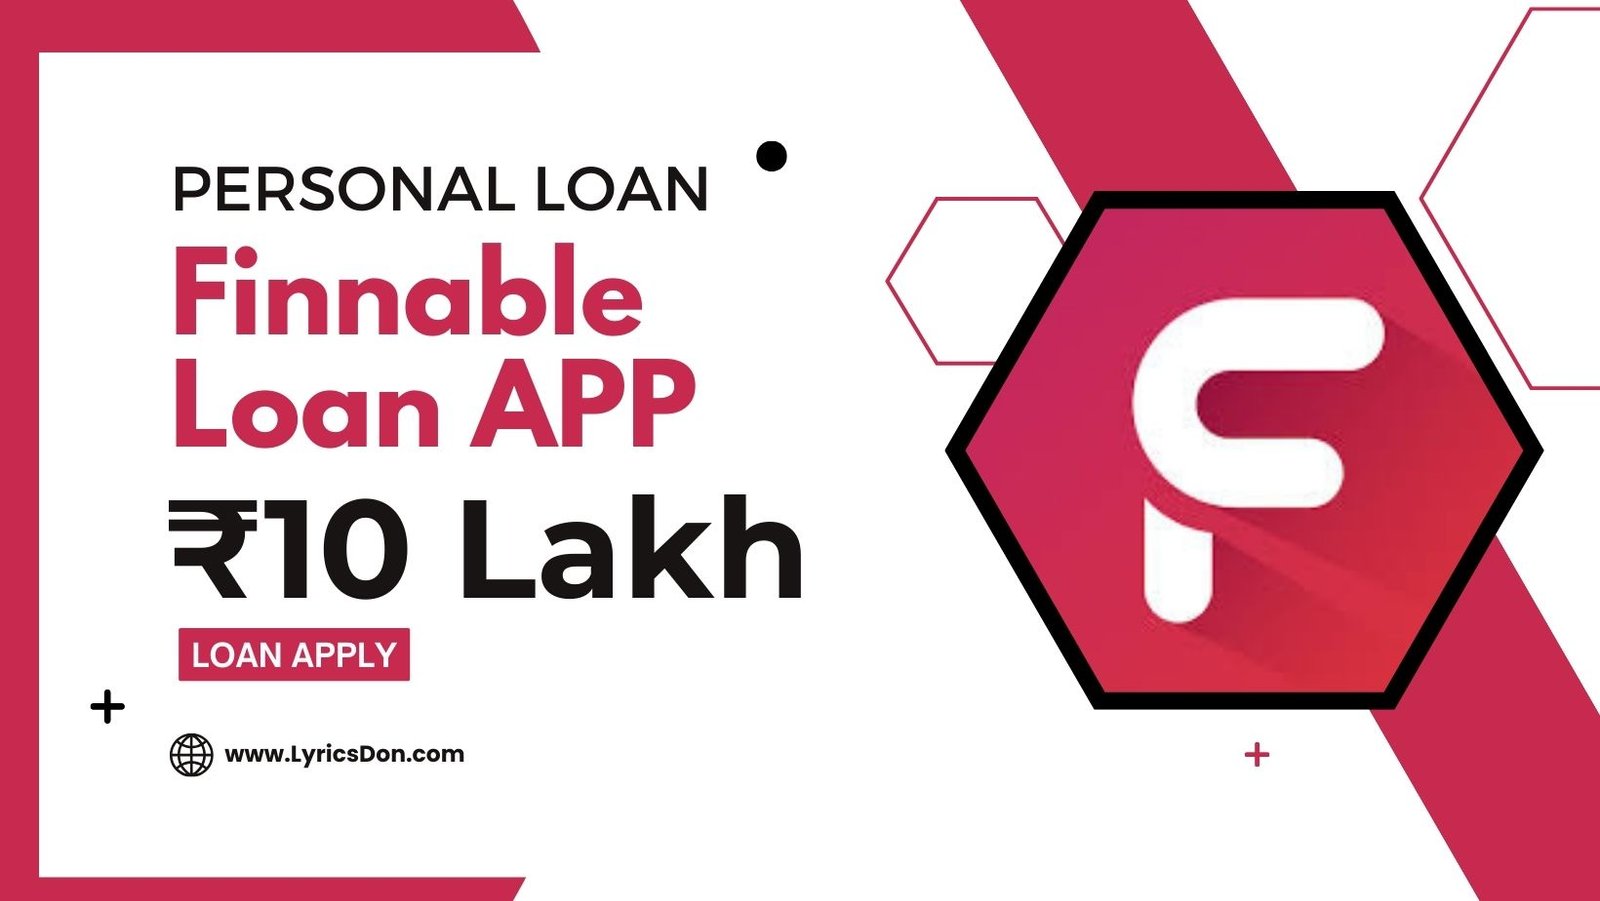 Finnable Loan App Loan Amount